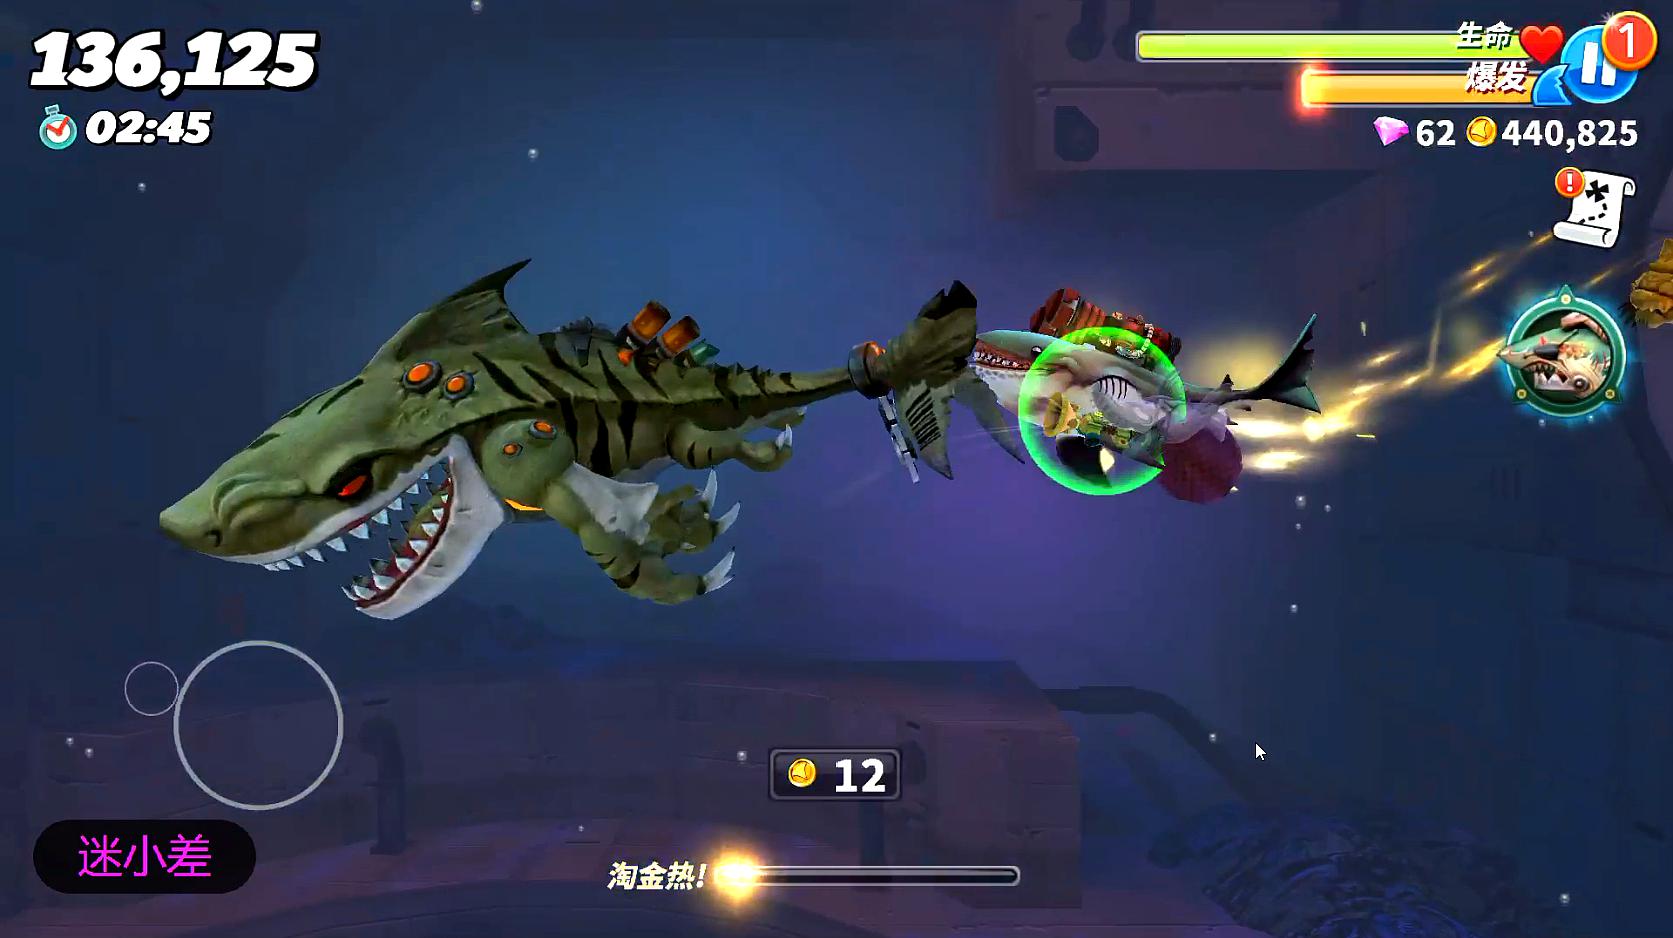 小鹿游戏:休闲类游戏《饥饿鲨:进化》的精彩视频大全